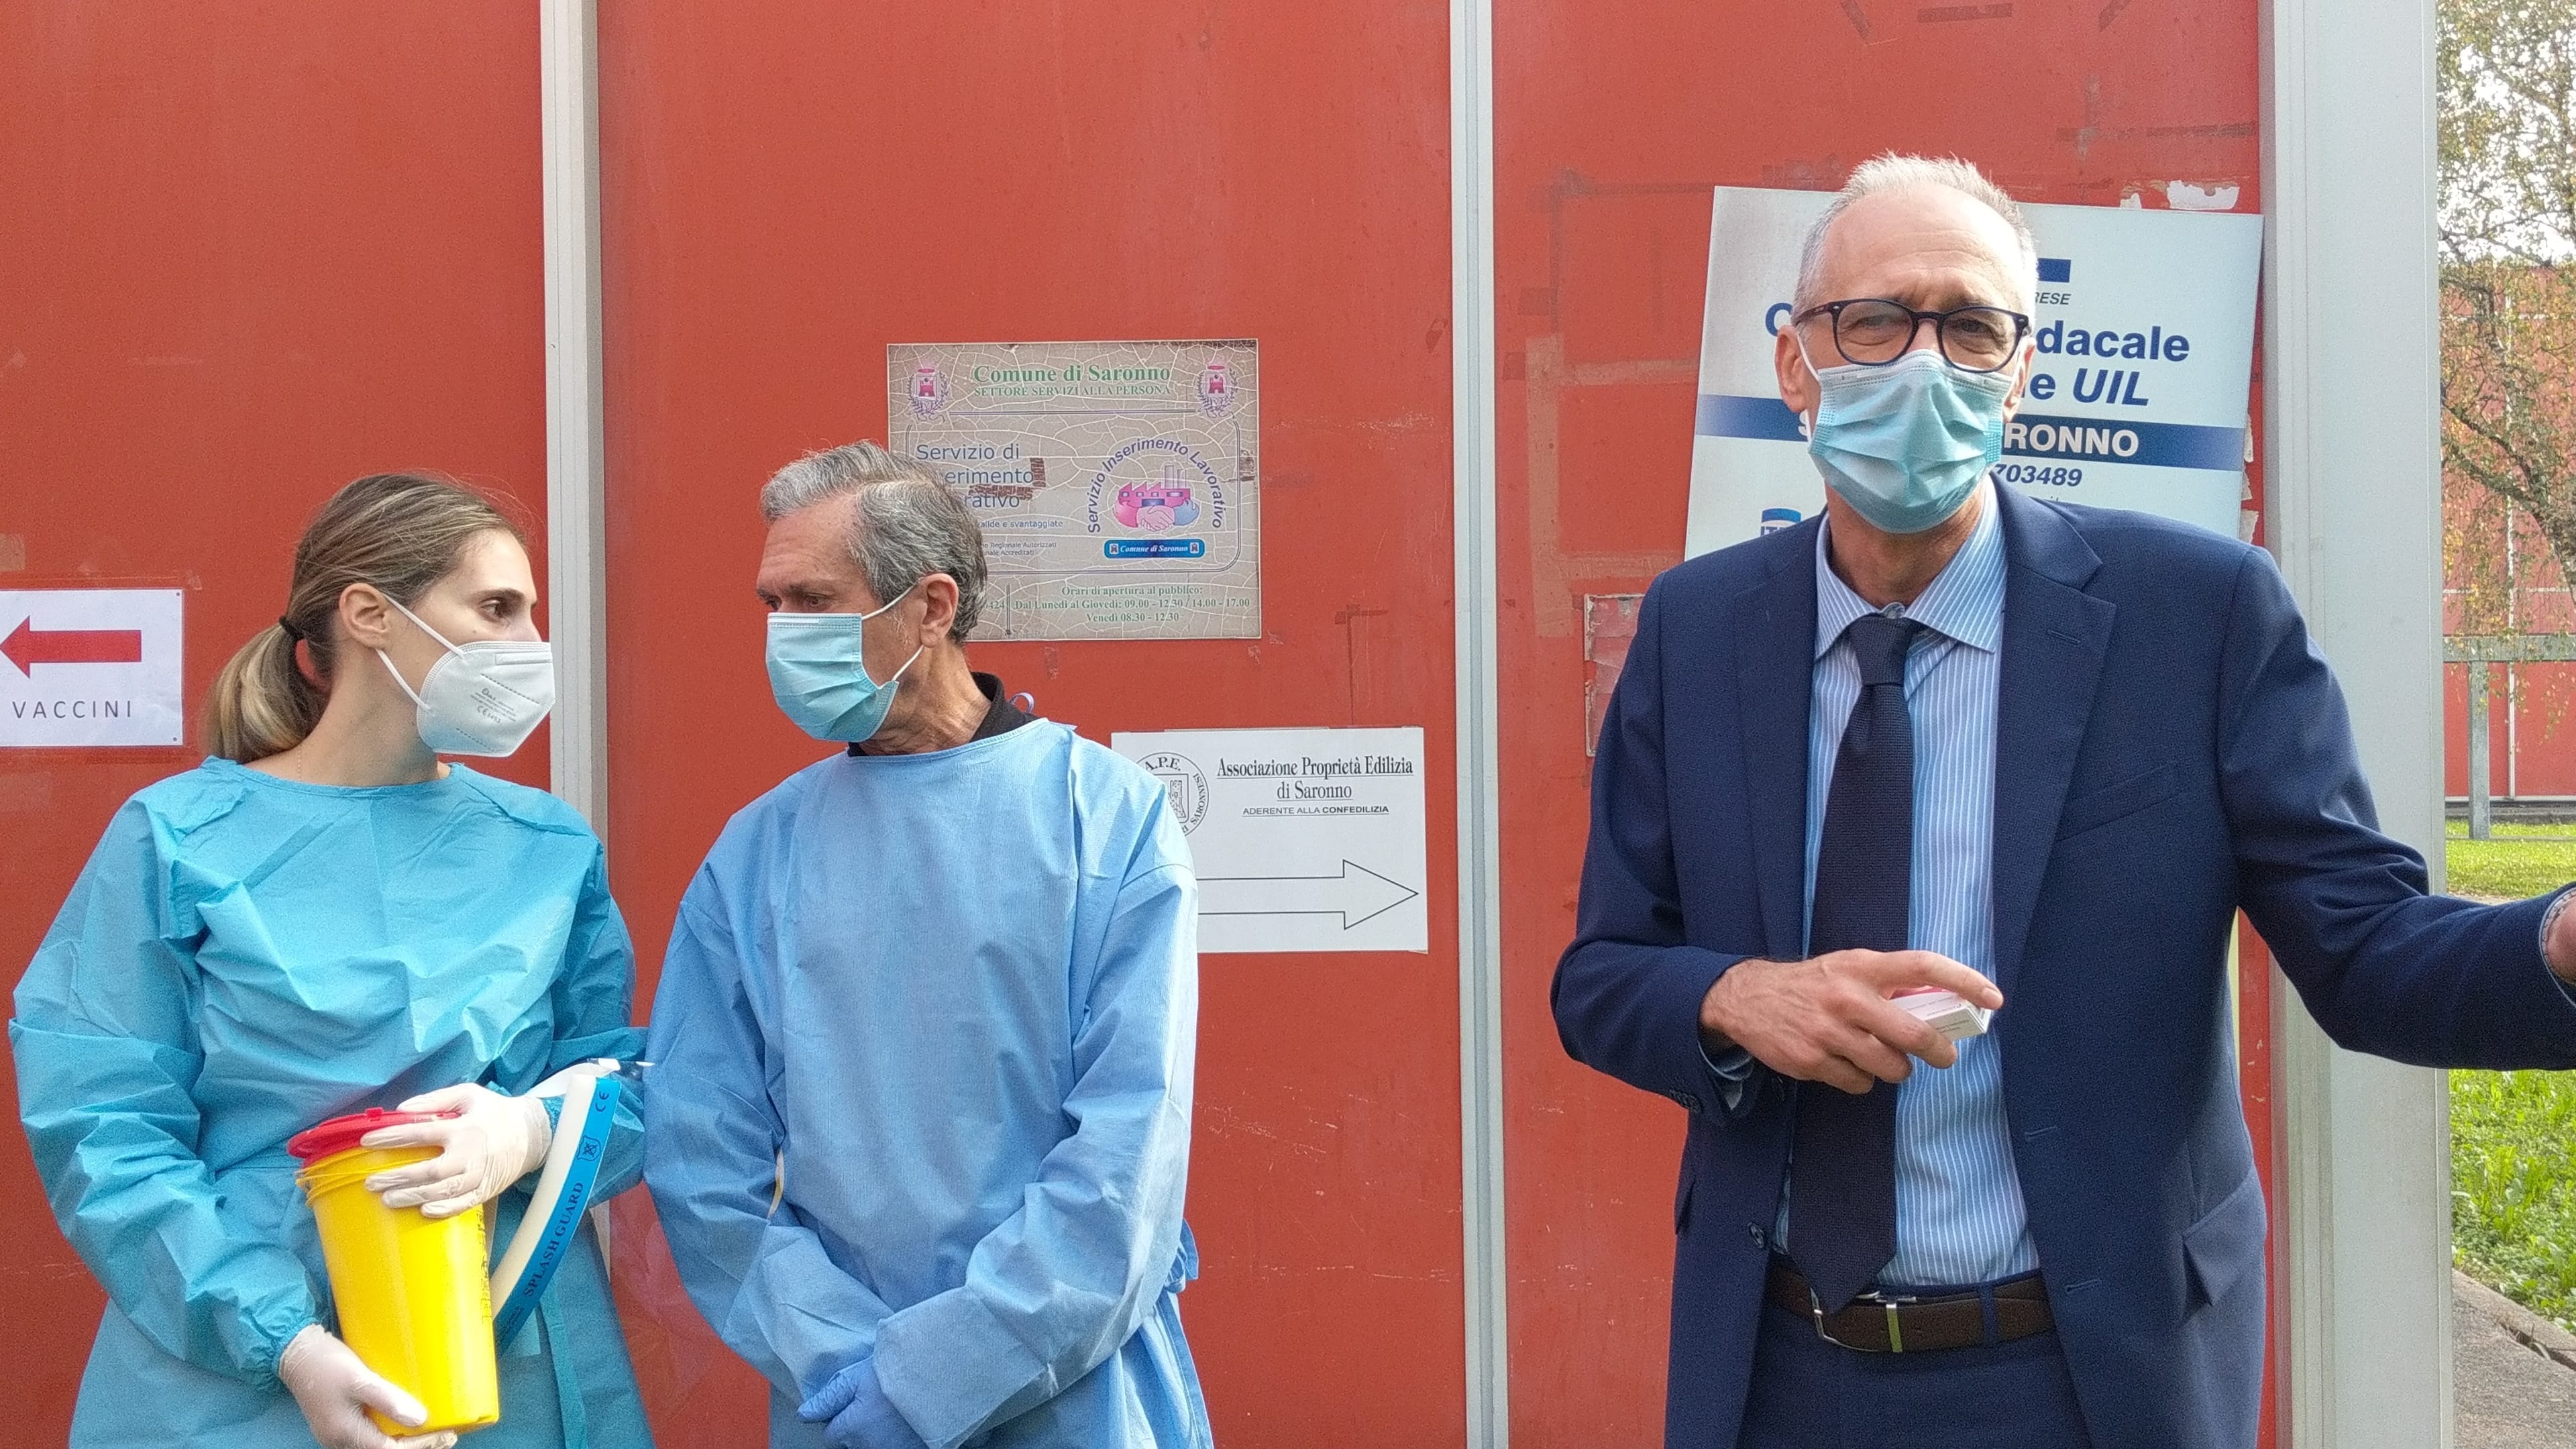 Centro vaccinazioni alla Pizzigoni di Saronno: oggi le prime prenotazioni. Ecco com’è andata